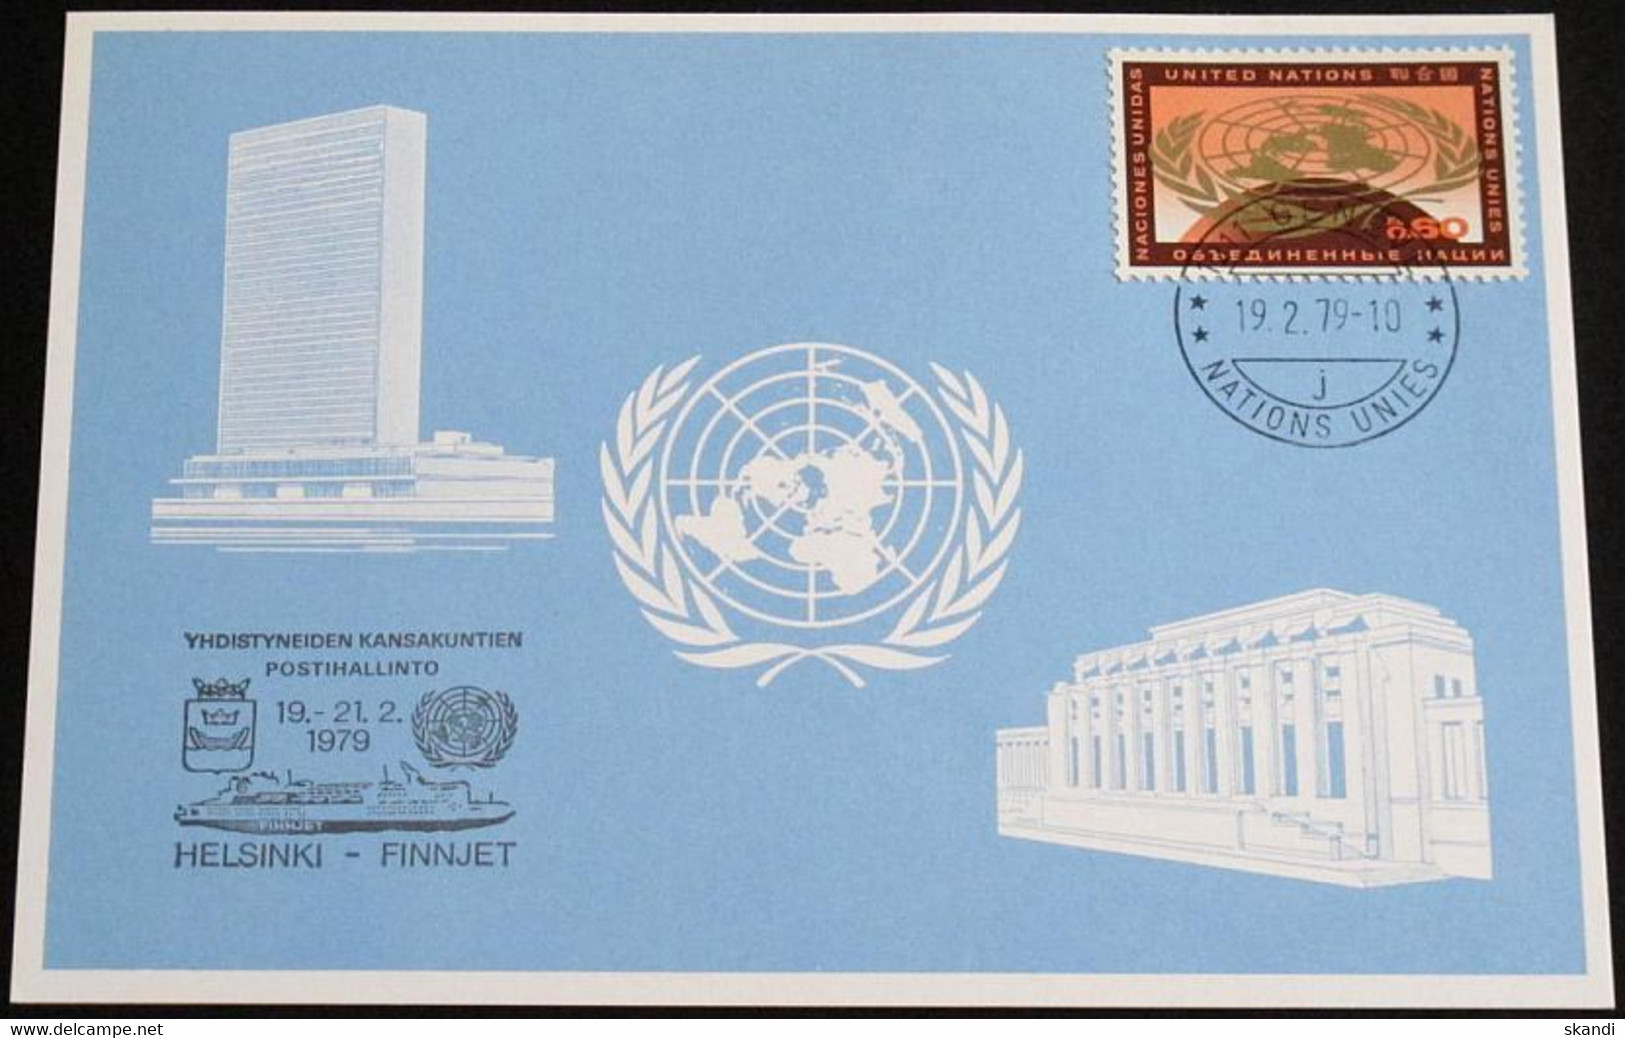 UNO GENF 1979 Mi-Nr. 74 Blaue Karte - Blue Card Mit Erinnerungsstempel HELSINKI - FINNJET - Covers & Documents